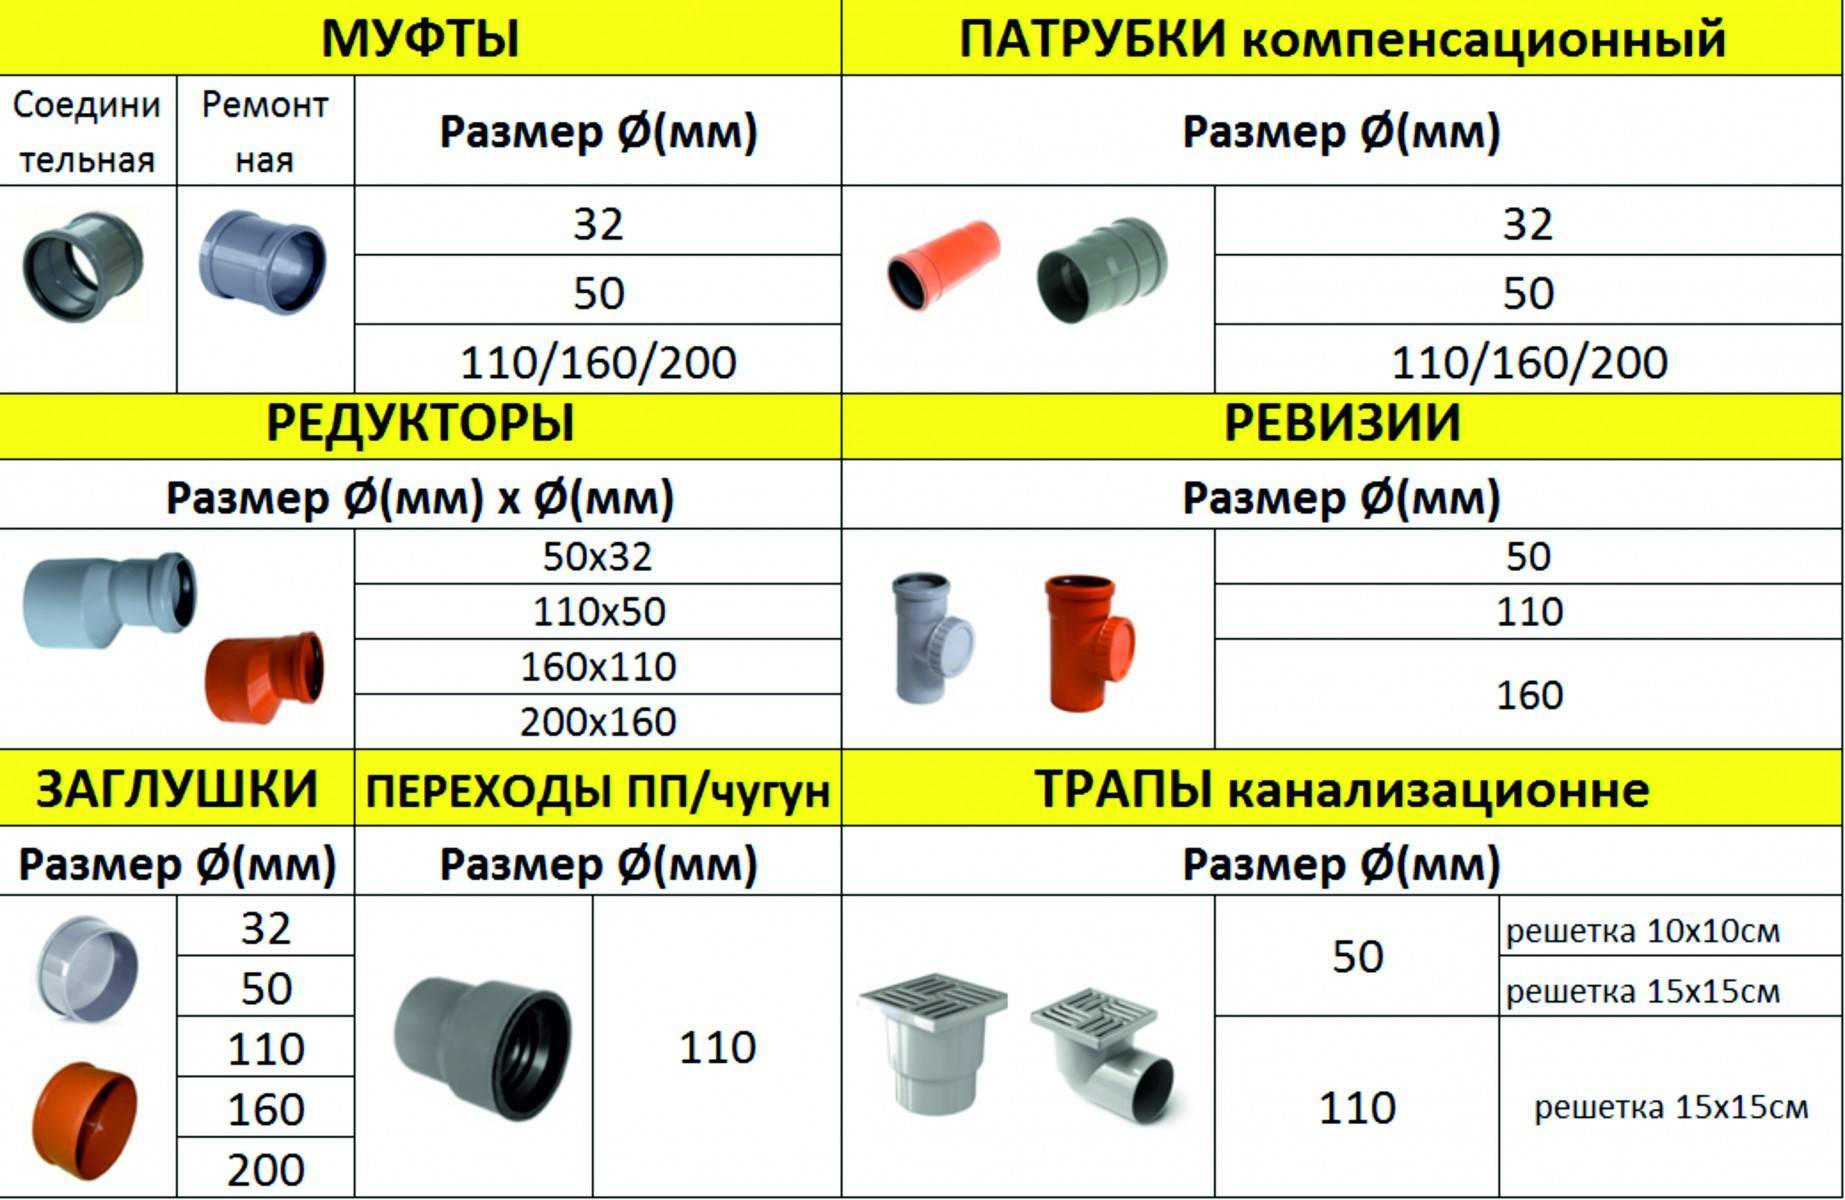 Как правильно монтировать пластиковую канализационную трубу диаметром 160 мм